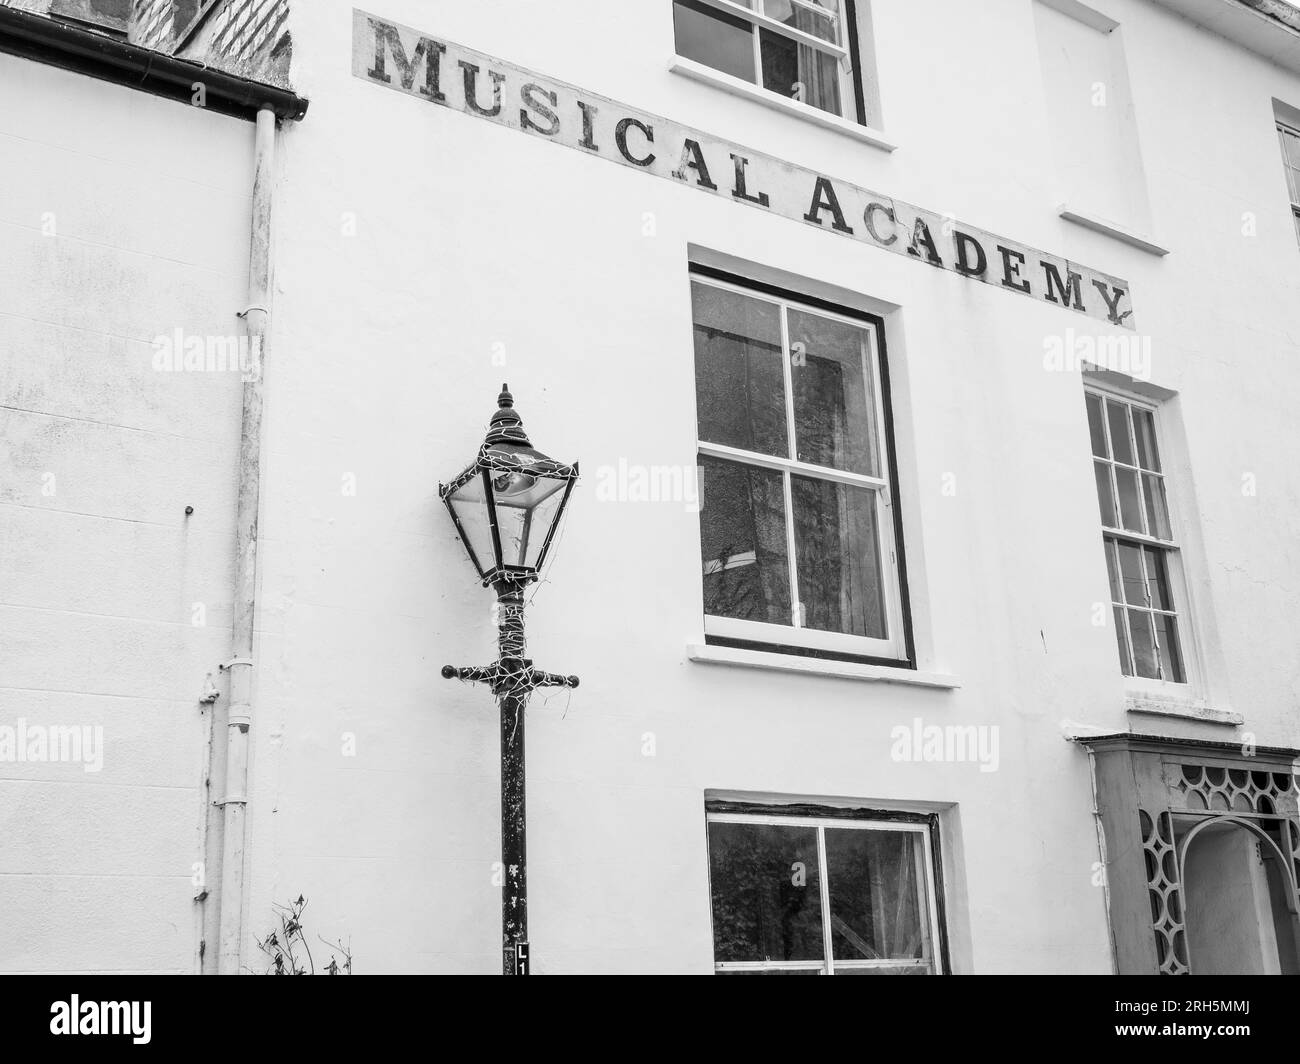 Old Musical Academy Building, heute ein Privathaus, Penzance, Cornwall, England, Großbritannien, GB. Stockfoto